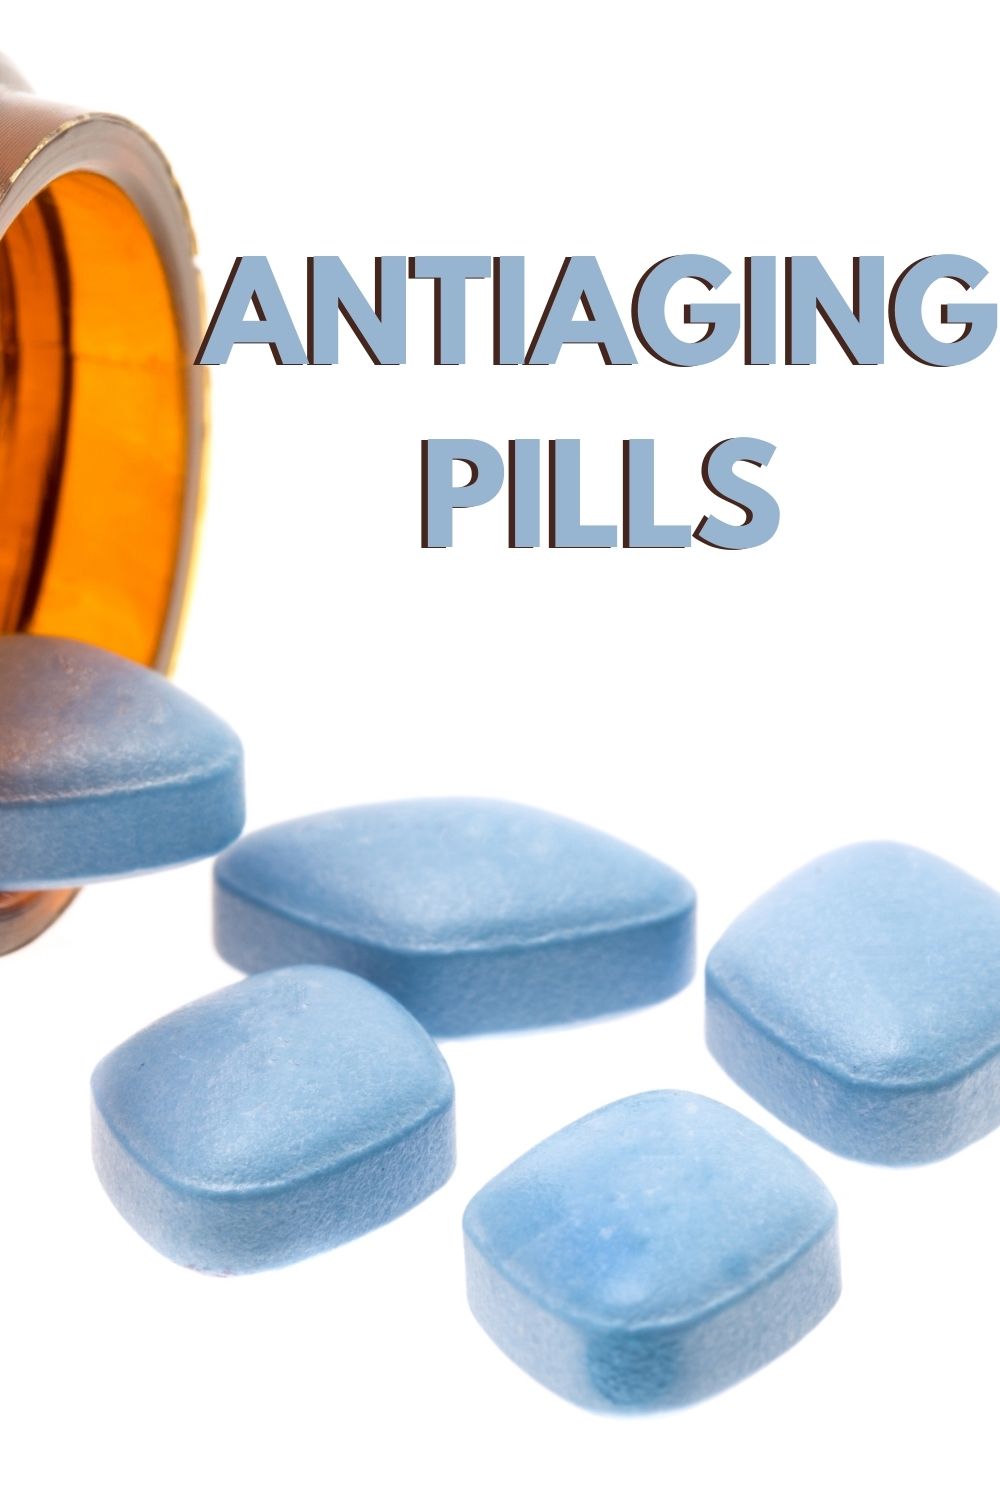 antiaging pills (gag gift)